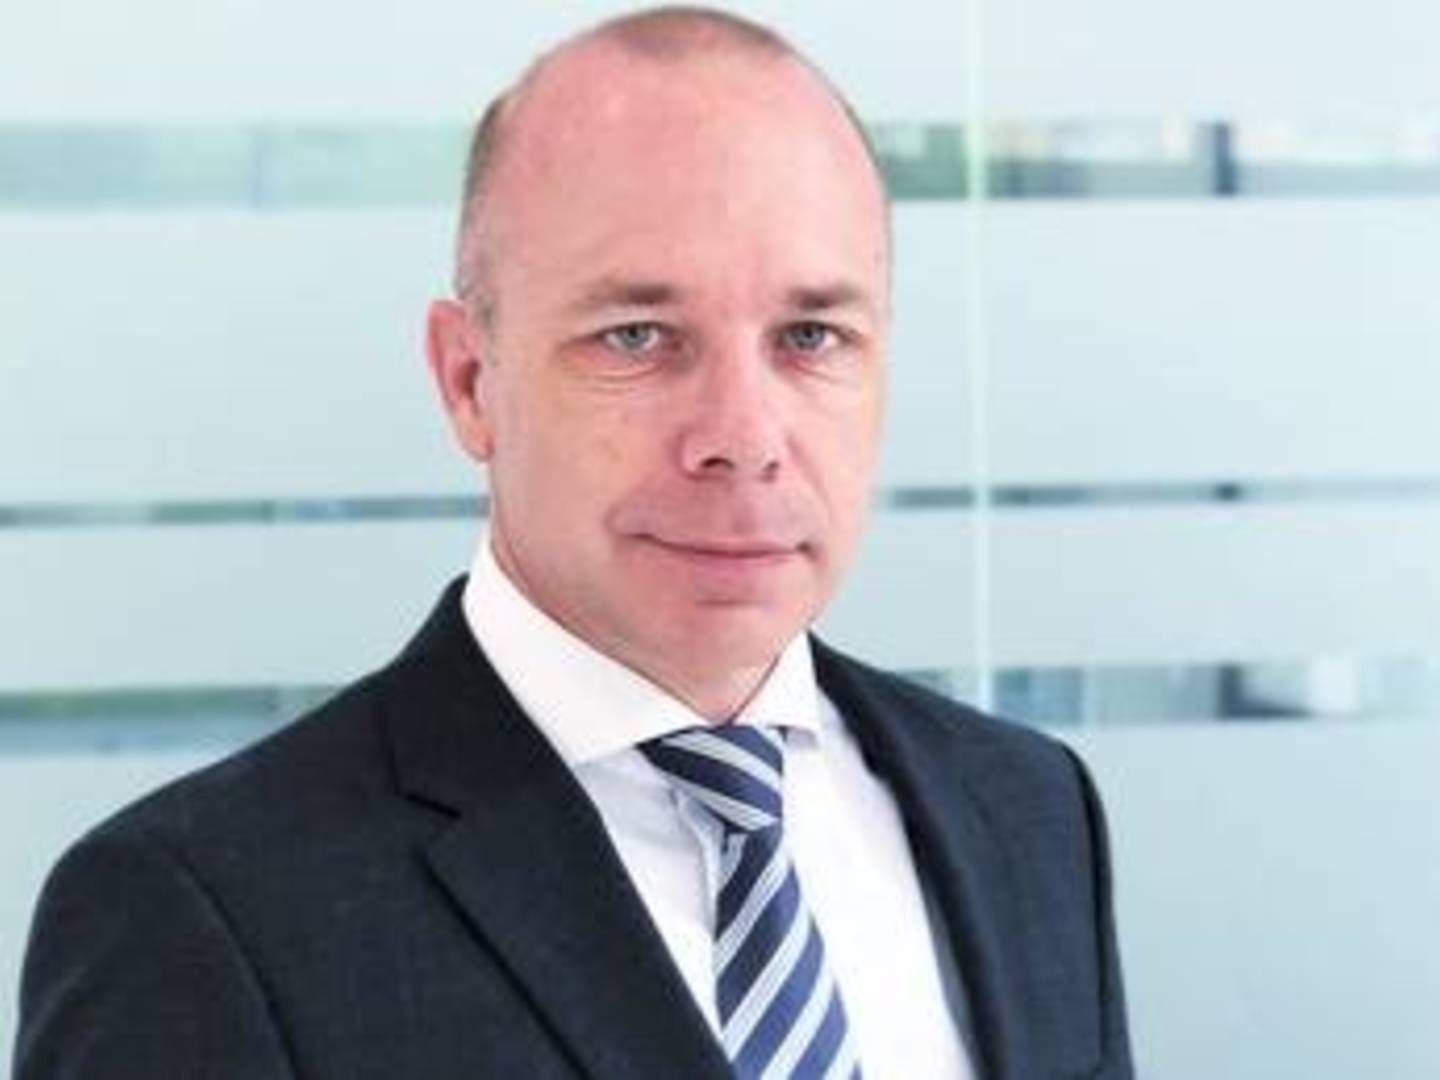 Lars Banke er topchef for Maersk Decom, der er et joint venture mellem Maersk Supply Service og Maersk Drilling. | Foto: Lars Banke er blevet sat i spidsen for Maersk Decom, der har sit hovedkontor i Lyngby